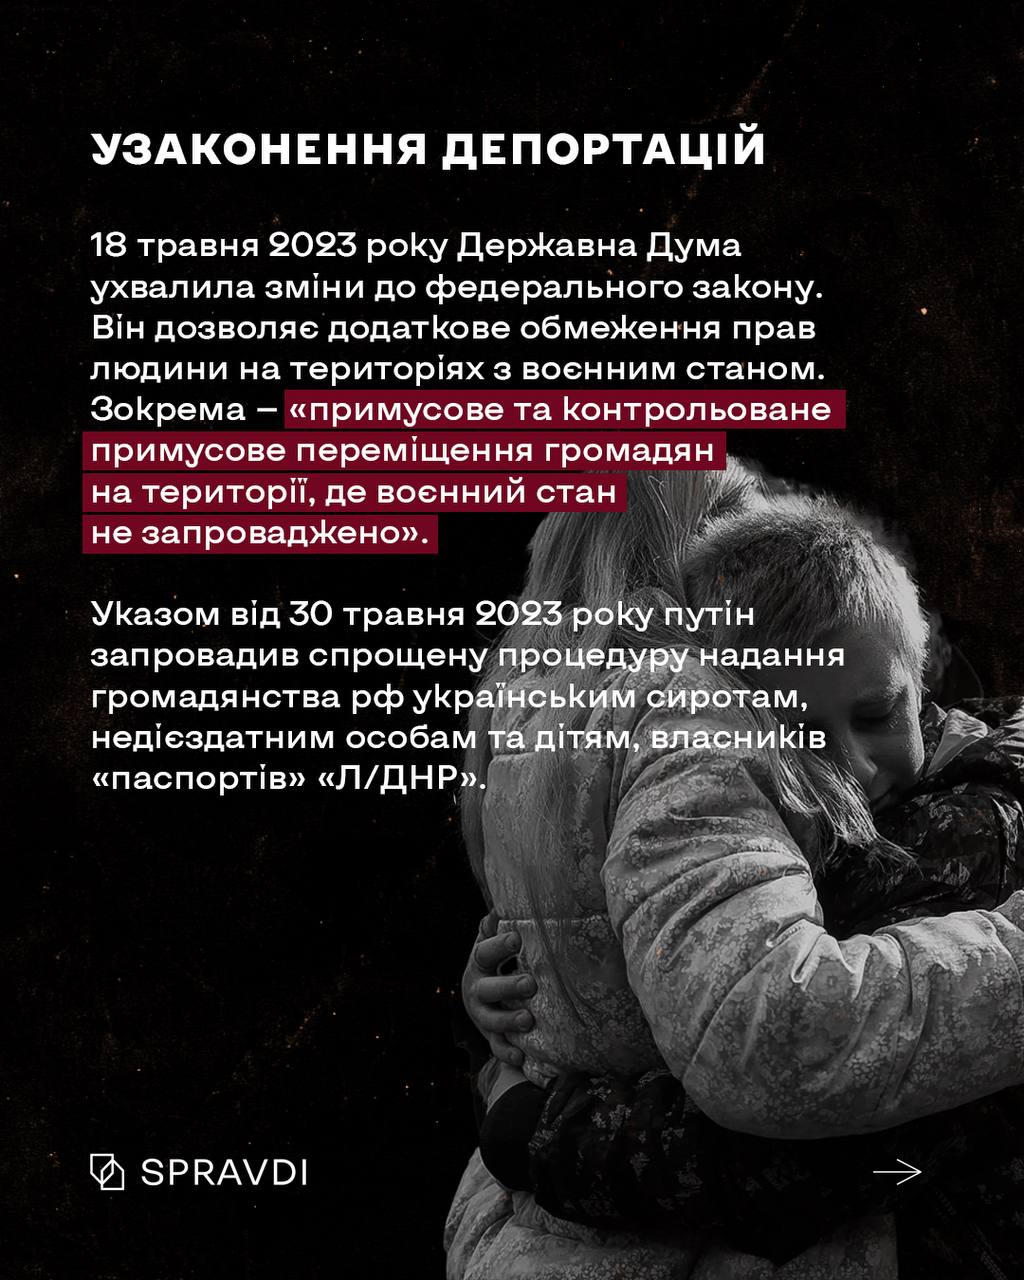 кремль готувався до геноциду українців навіть на законодавчому рівні